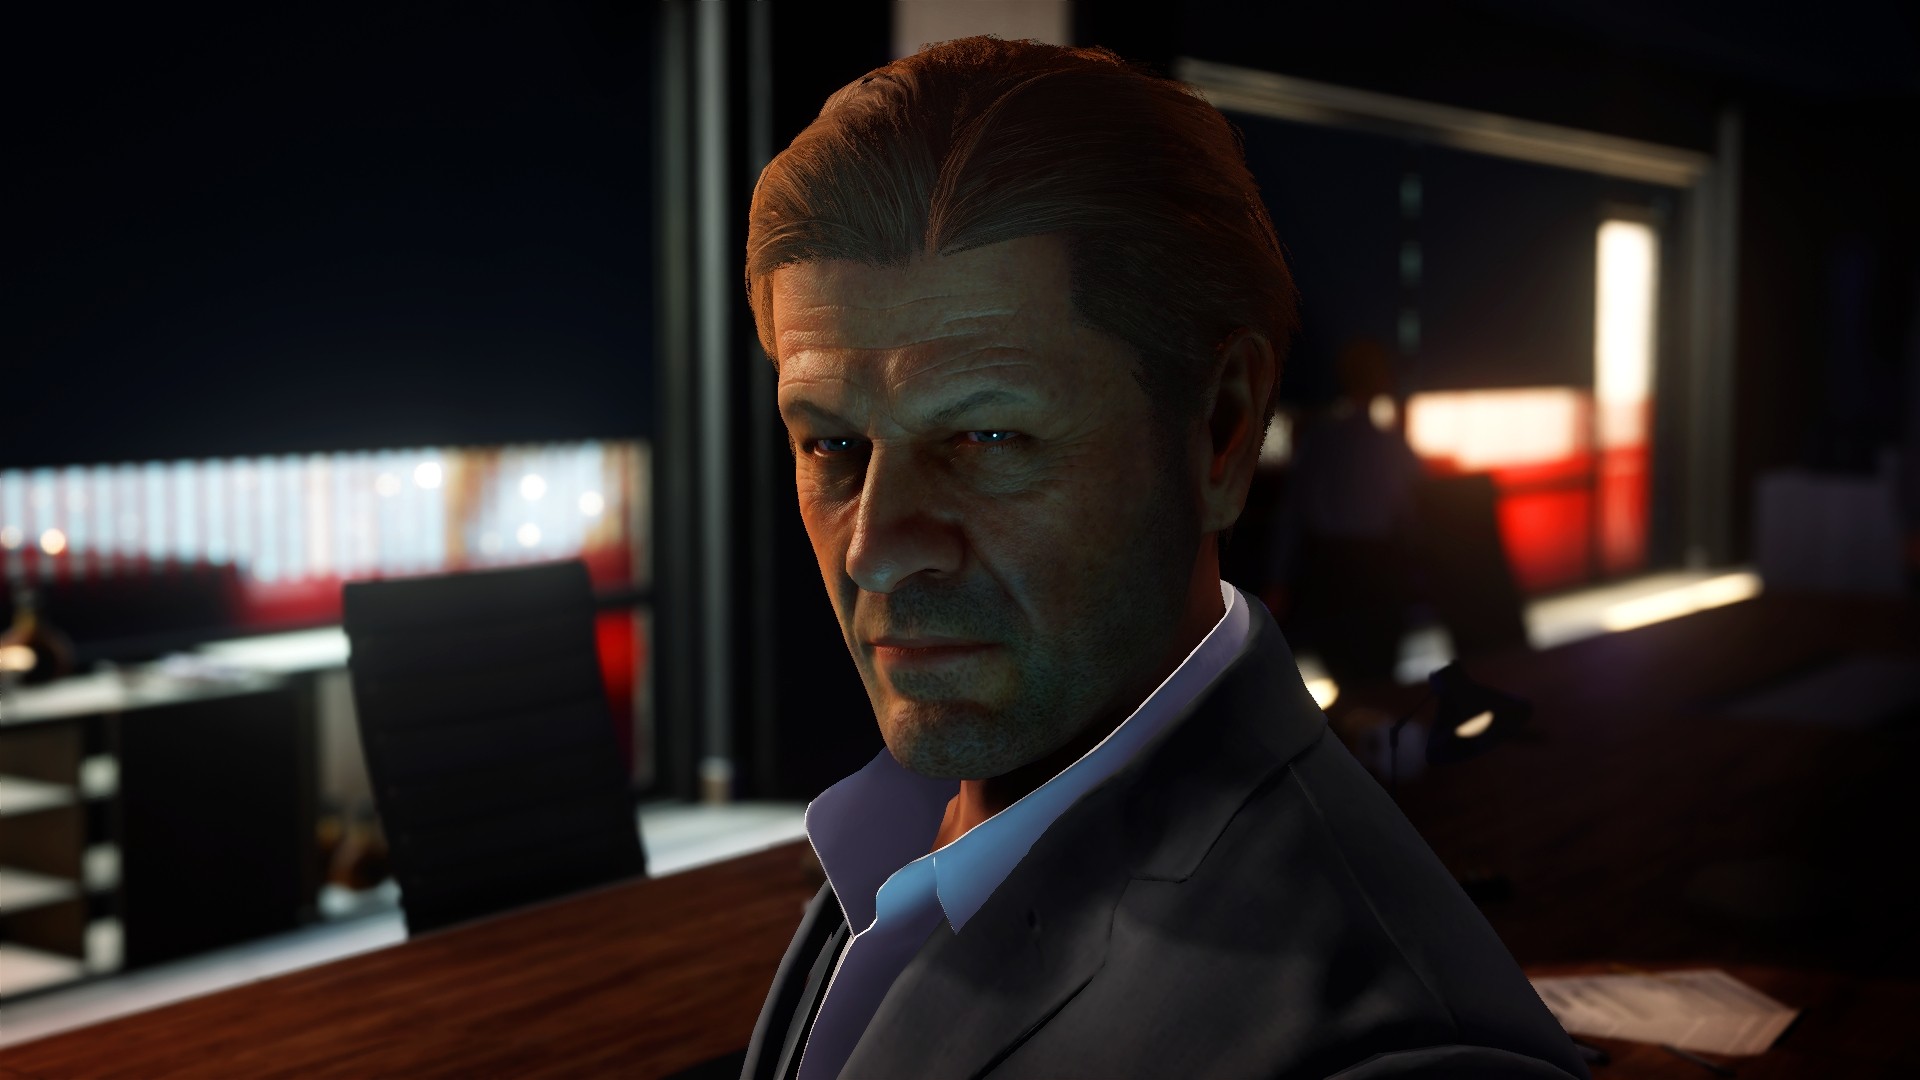 Hitman 2 - в новую часть стелс-экшена вернется дипломат 47-го, появились скриншоты с персонажем Шона Бина